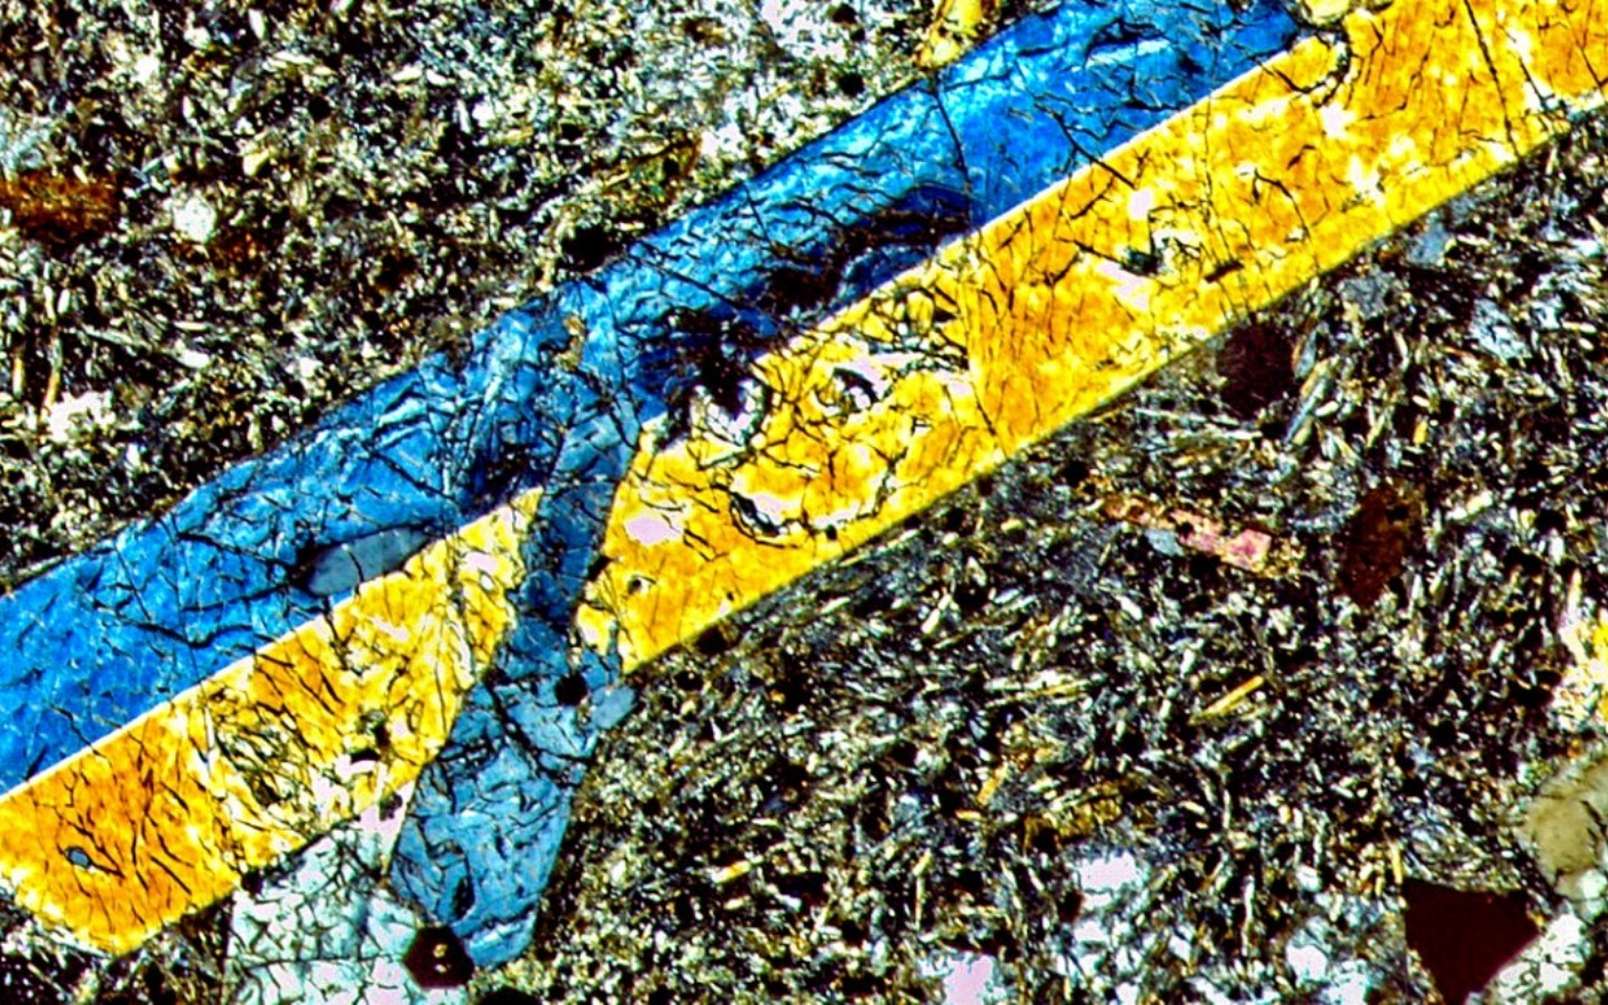 Dans cette image en lumière polarisée, on observe au microscope un échantillon de lave provenant des Bermudes. Les cristaux bleus et jaunes sont constitués d'augite de titane, entourés d'une masse de minéraux, qui comprend feldspaths, phlogopite, spinelle, pérovskite et de l'apatite. Cet assemblage suggère que la source du manteau qui a produit cette lave était riche en eau. © Gazel Lab